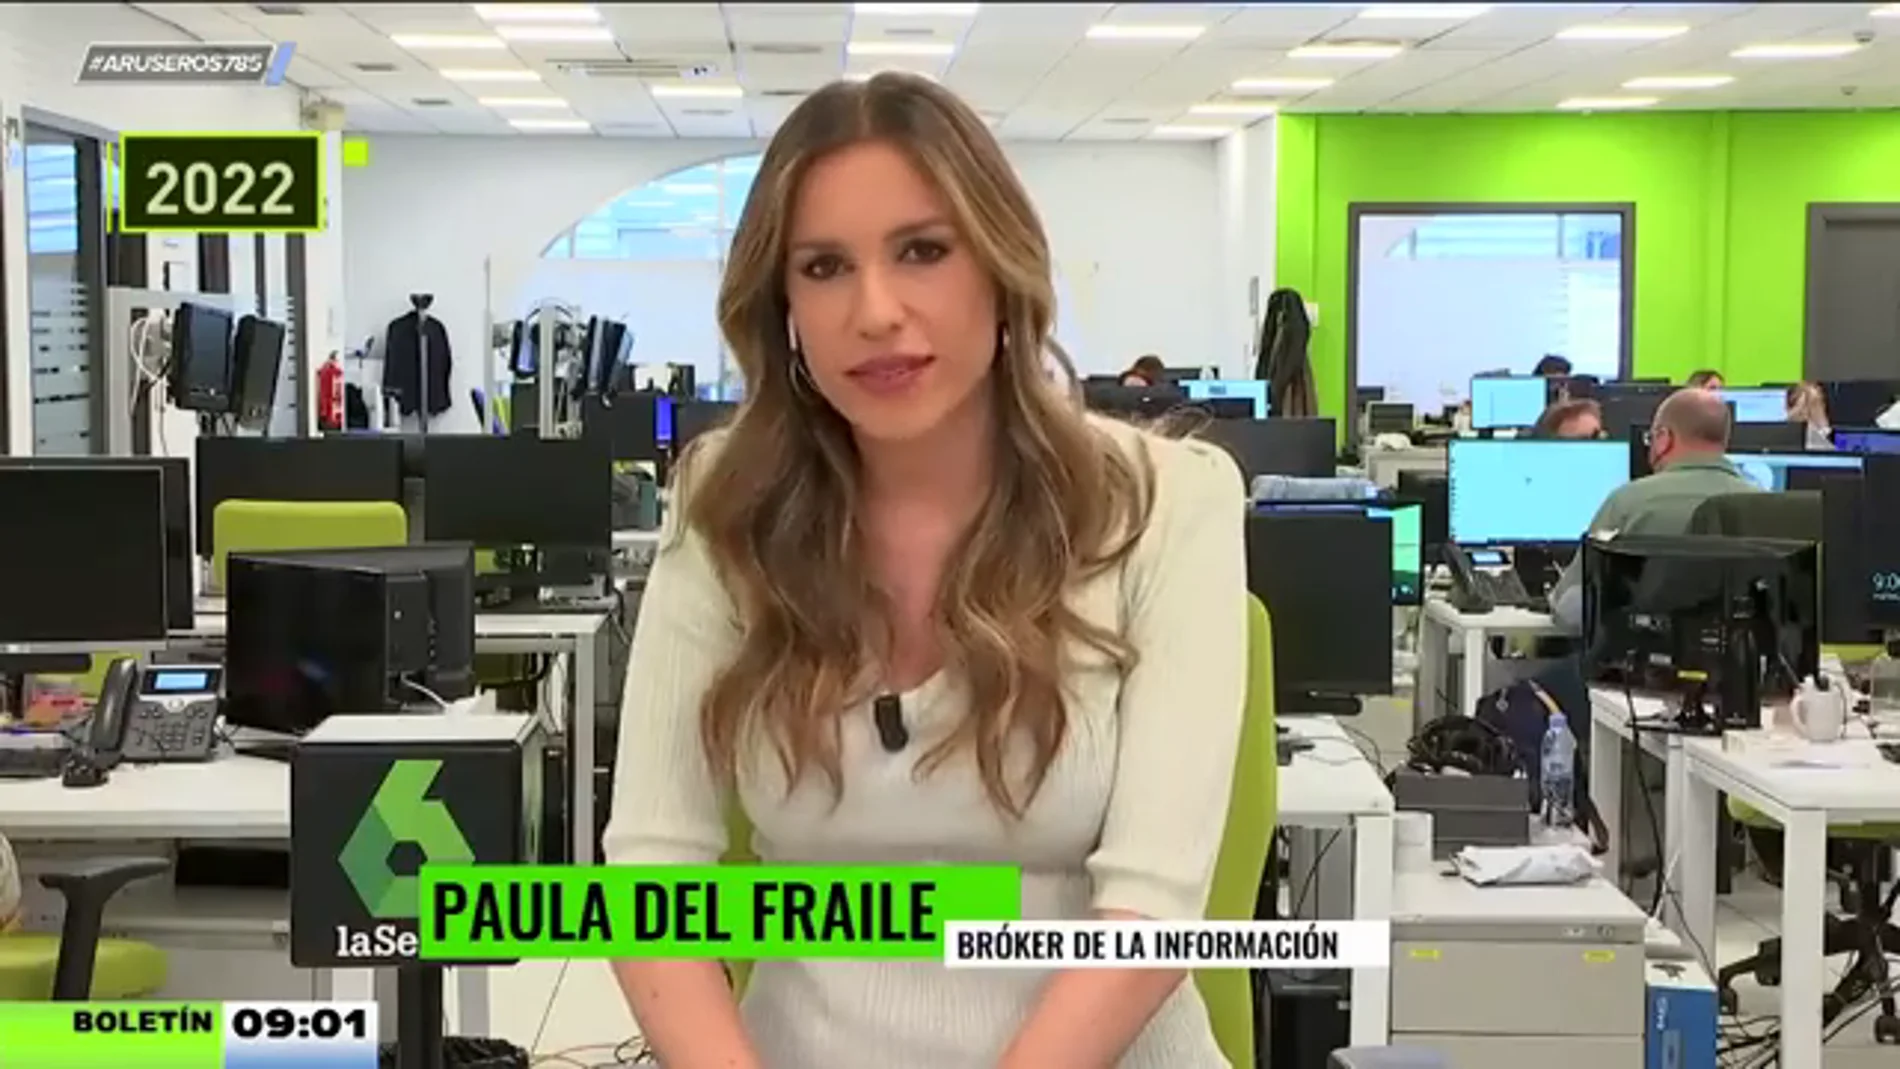 Paula del Fraile, la 'bróker de la información' de Aruser@s: "Empecé el programa estando en el lugar de la noticia"